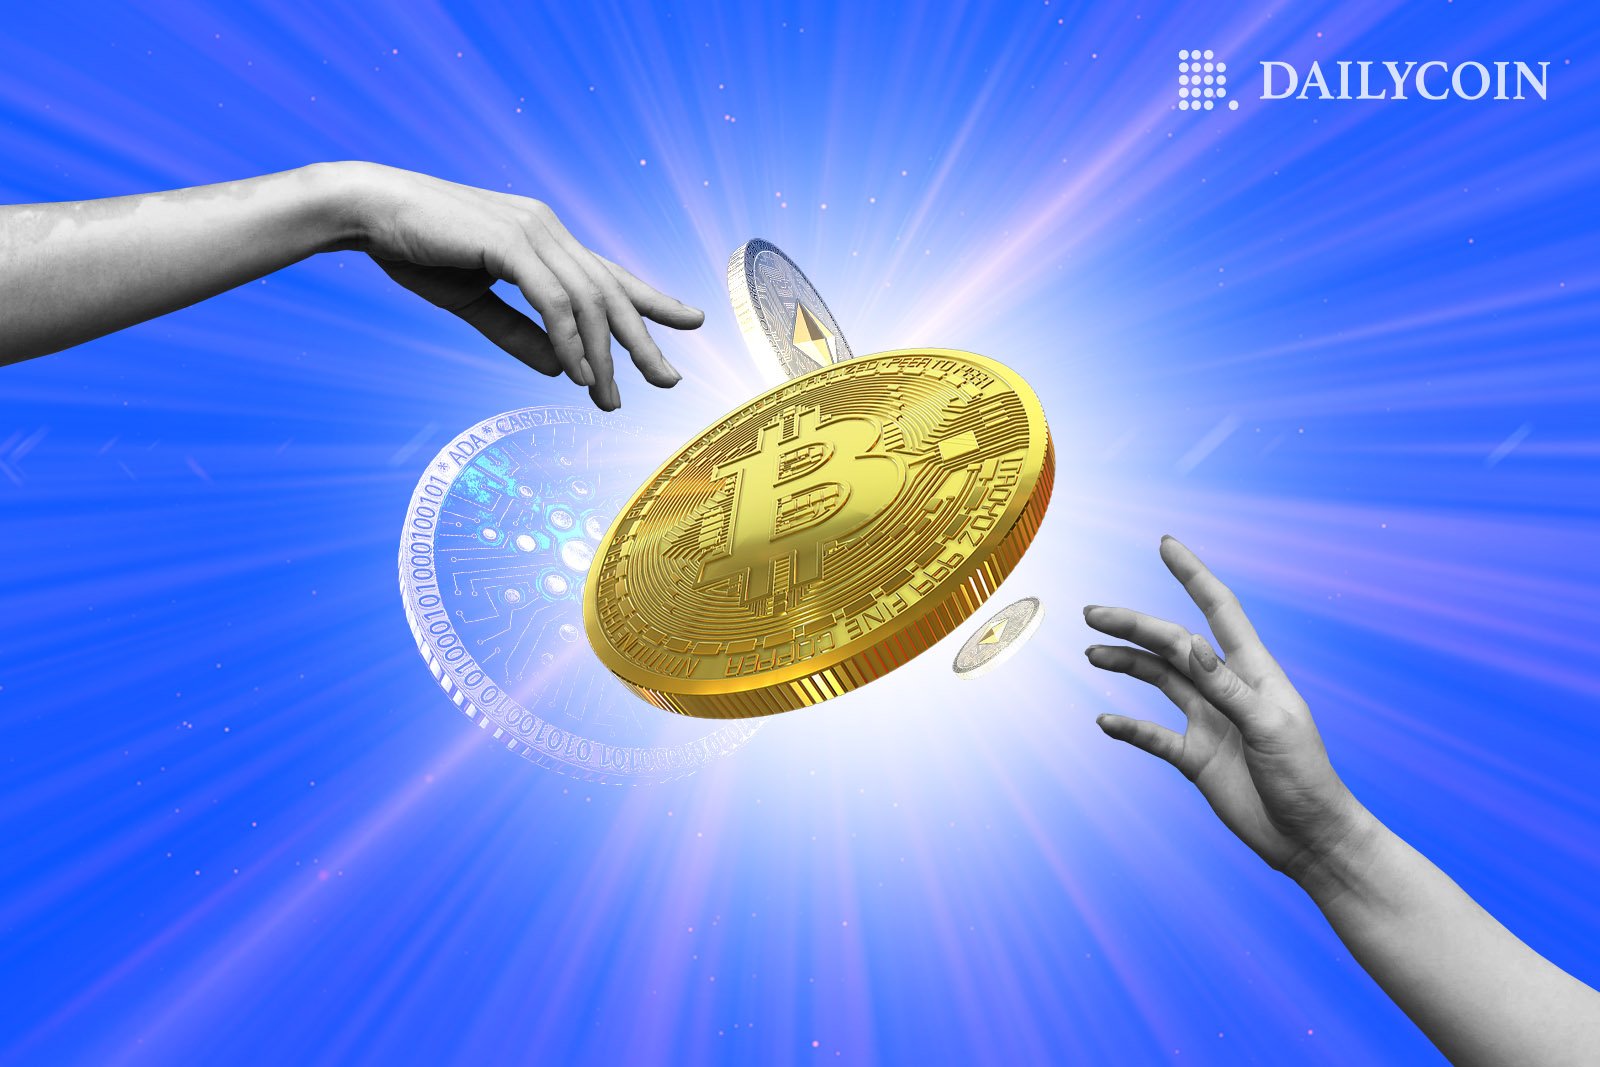 Human hands reaching towards a bitcoin BTC